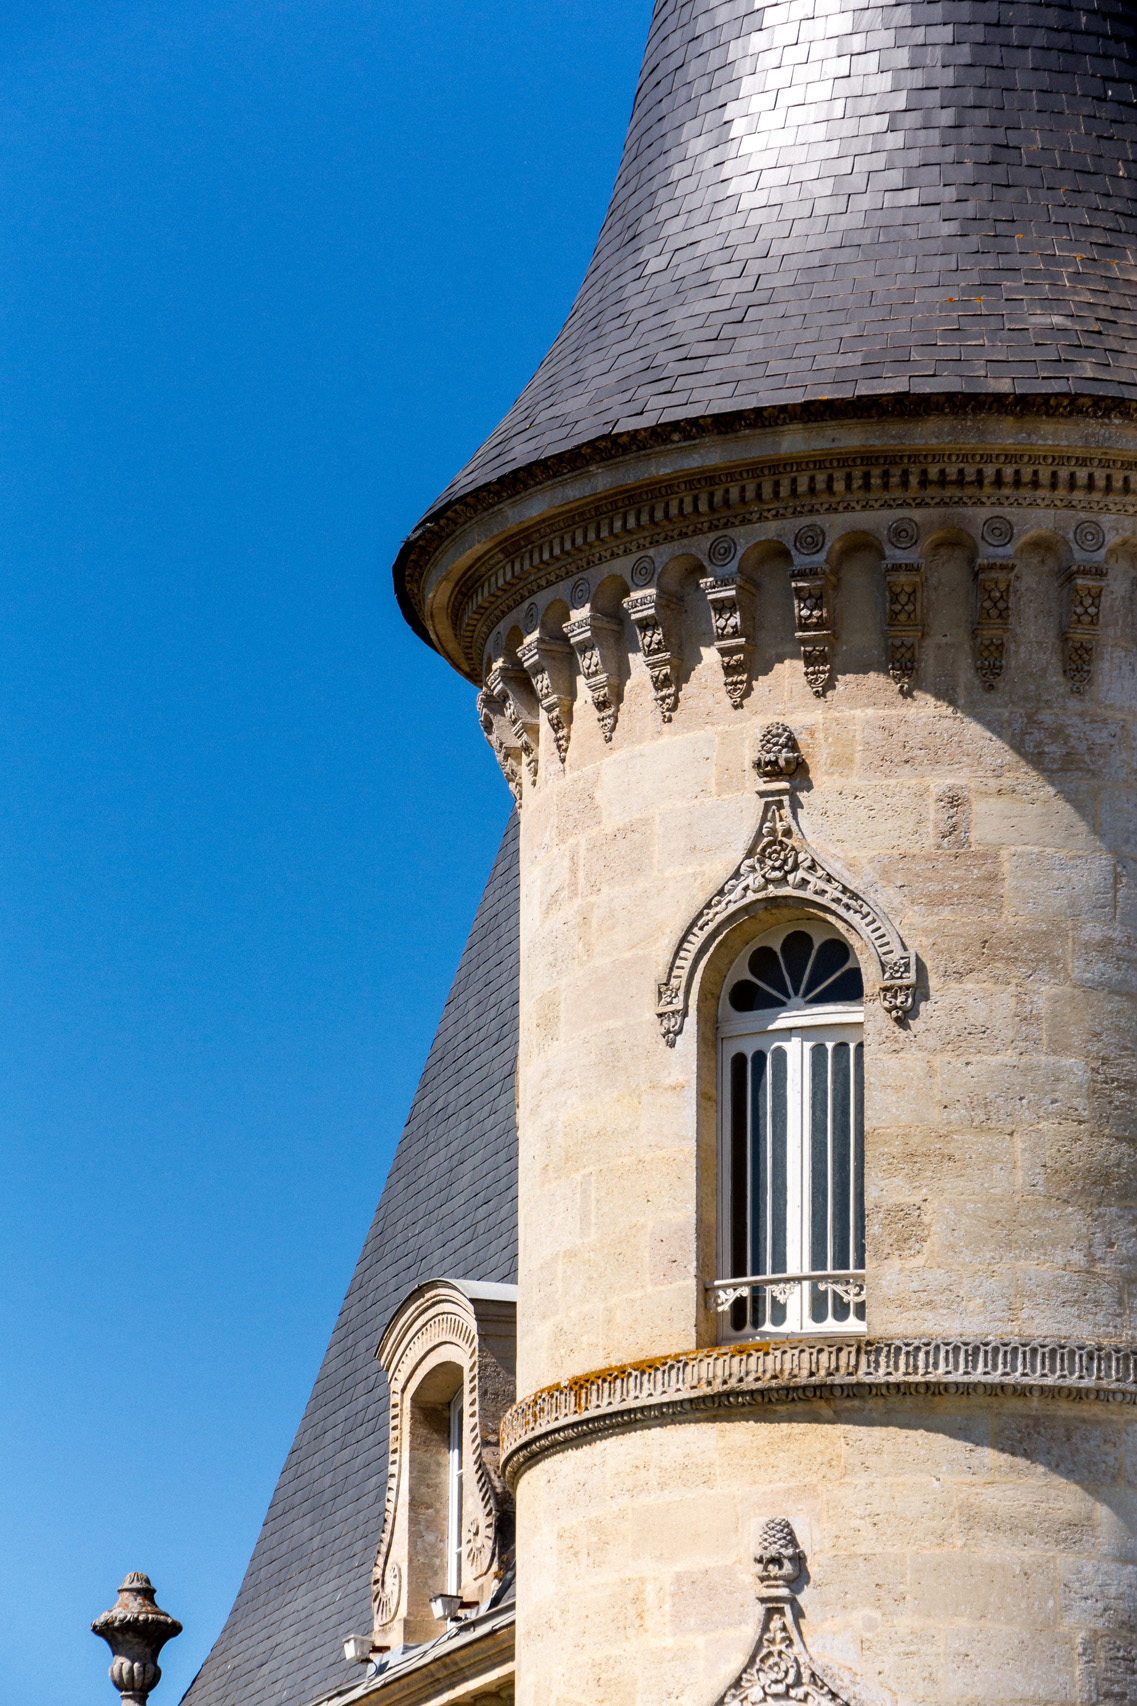 Chateau Pichon Baron, details